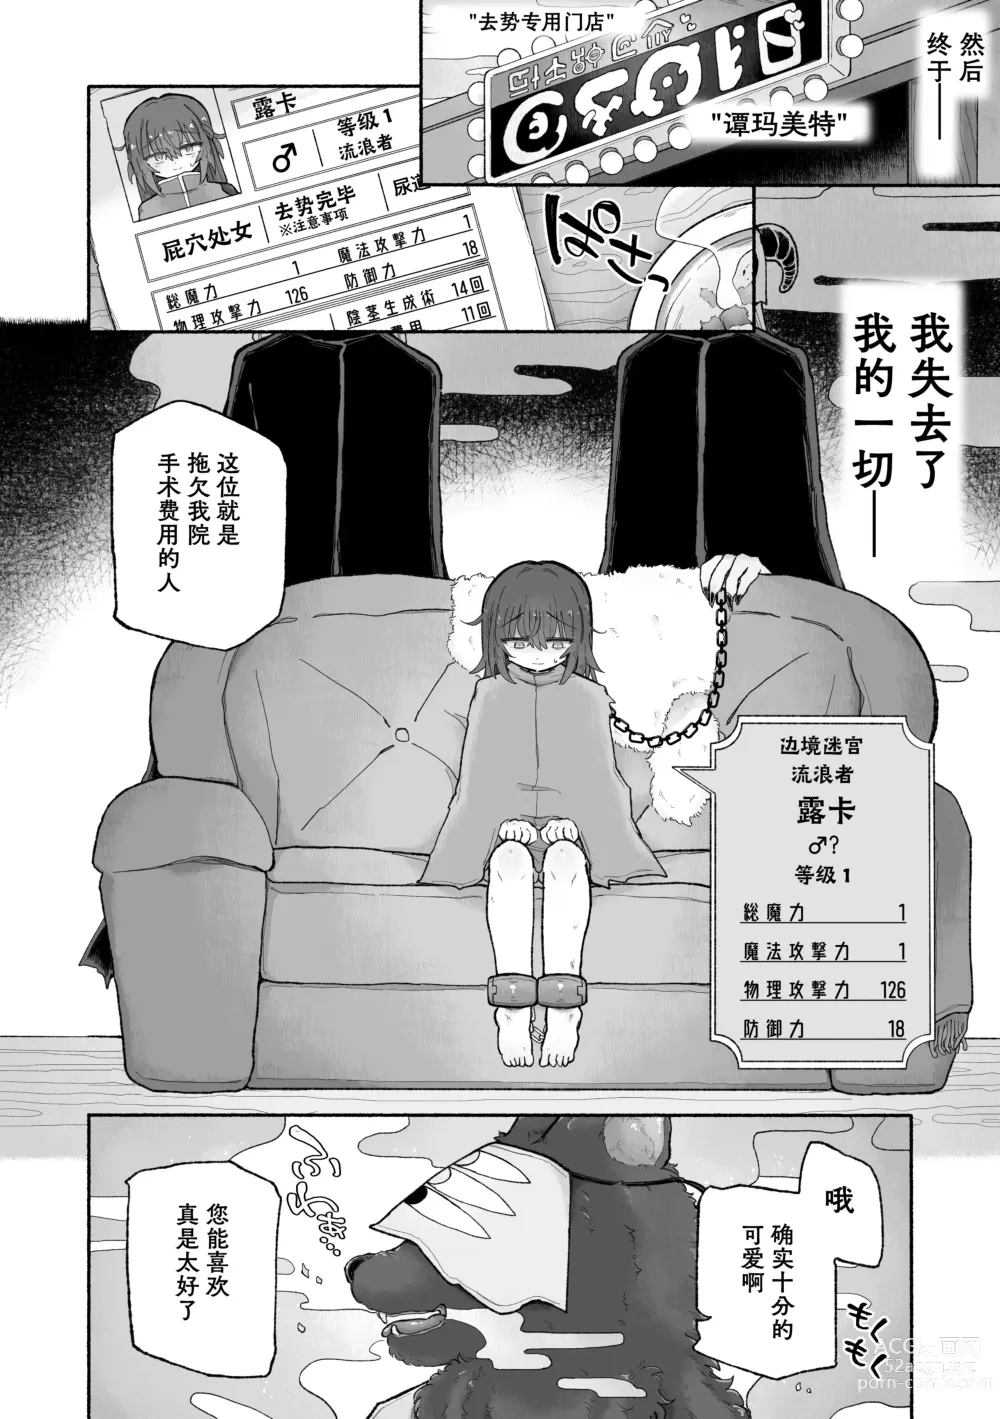 Page 27 of doujinshi Do hamari chui no kyosei danjon! 〜Mugen shasei no kairaku jigoku e yokoso〜